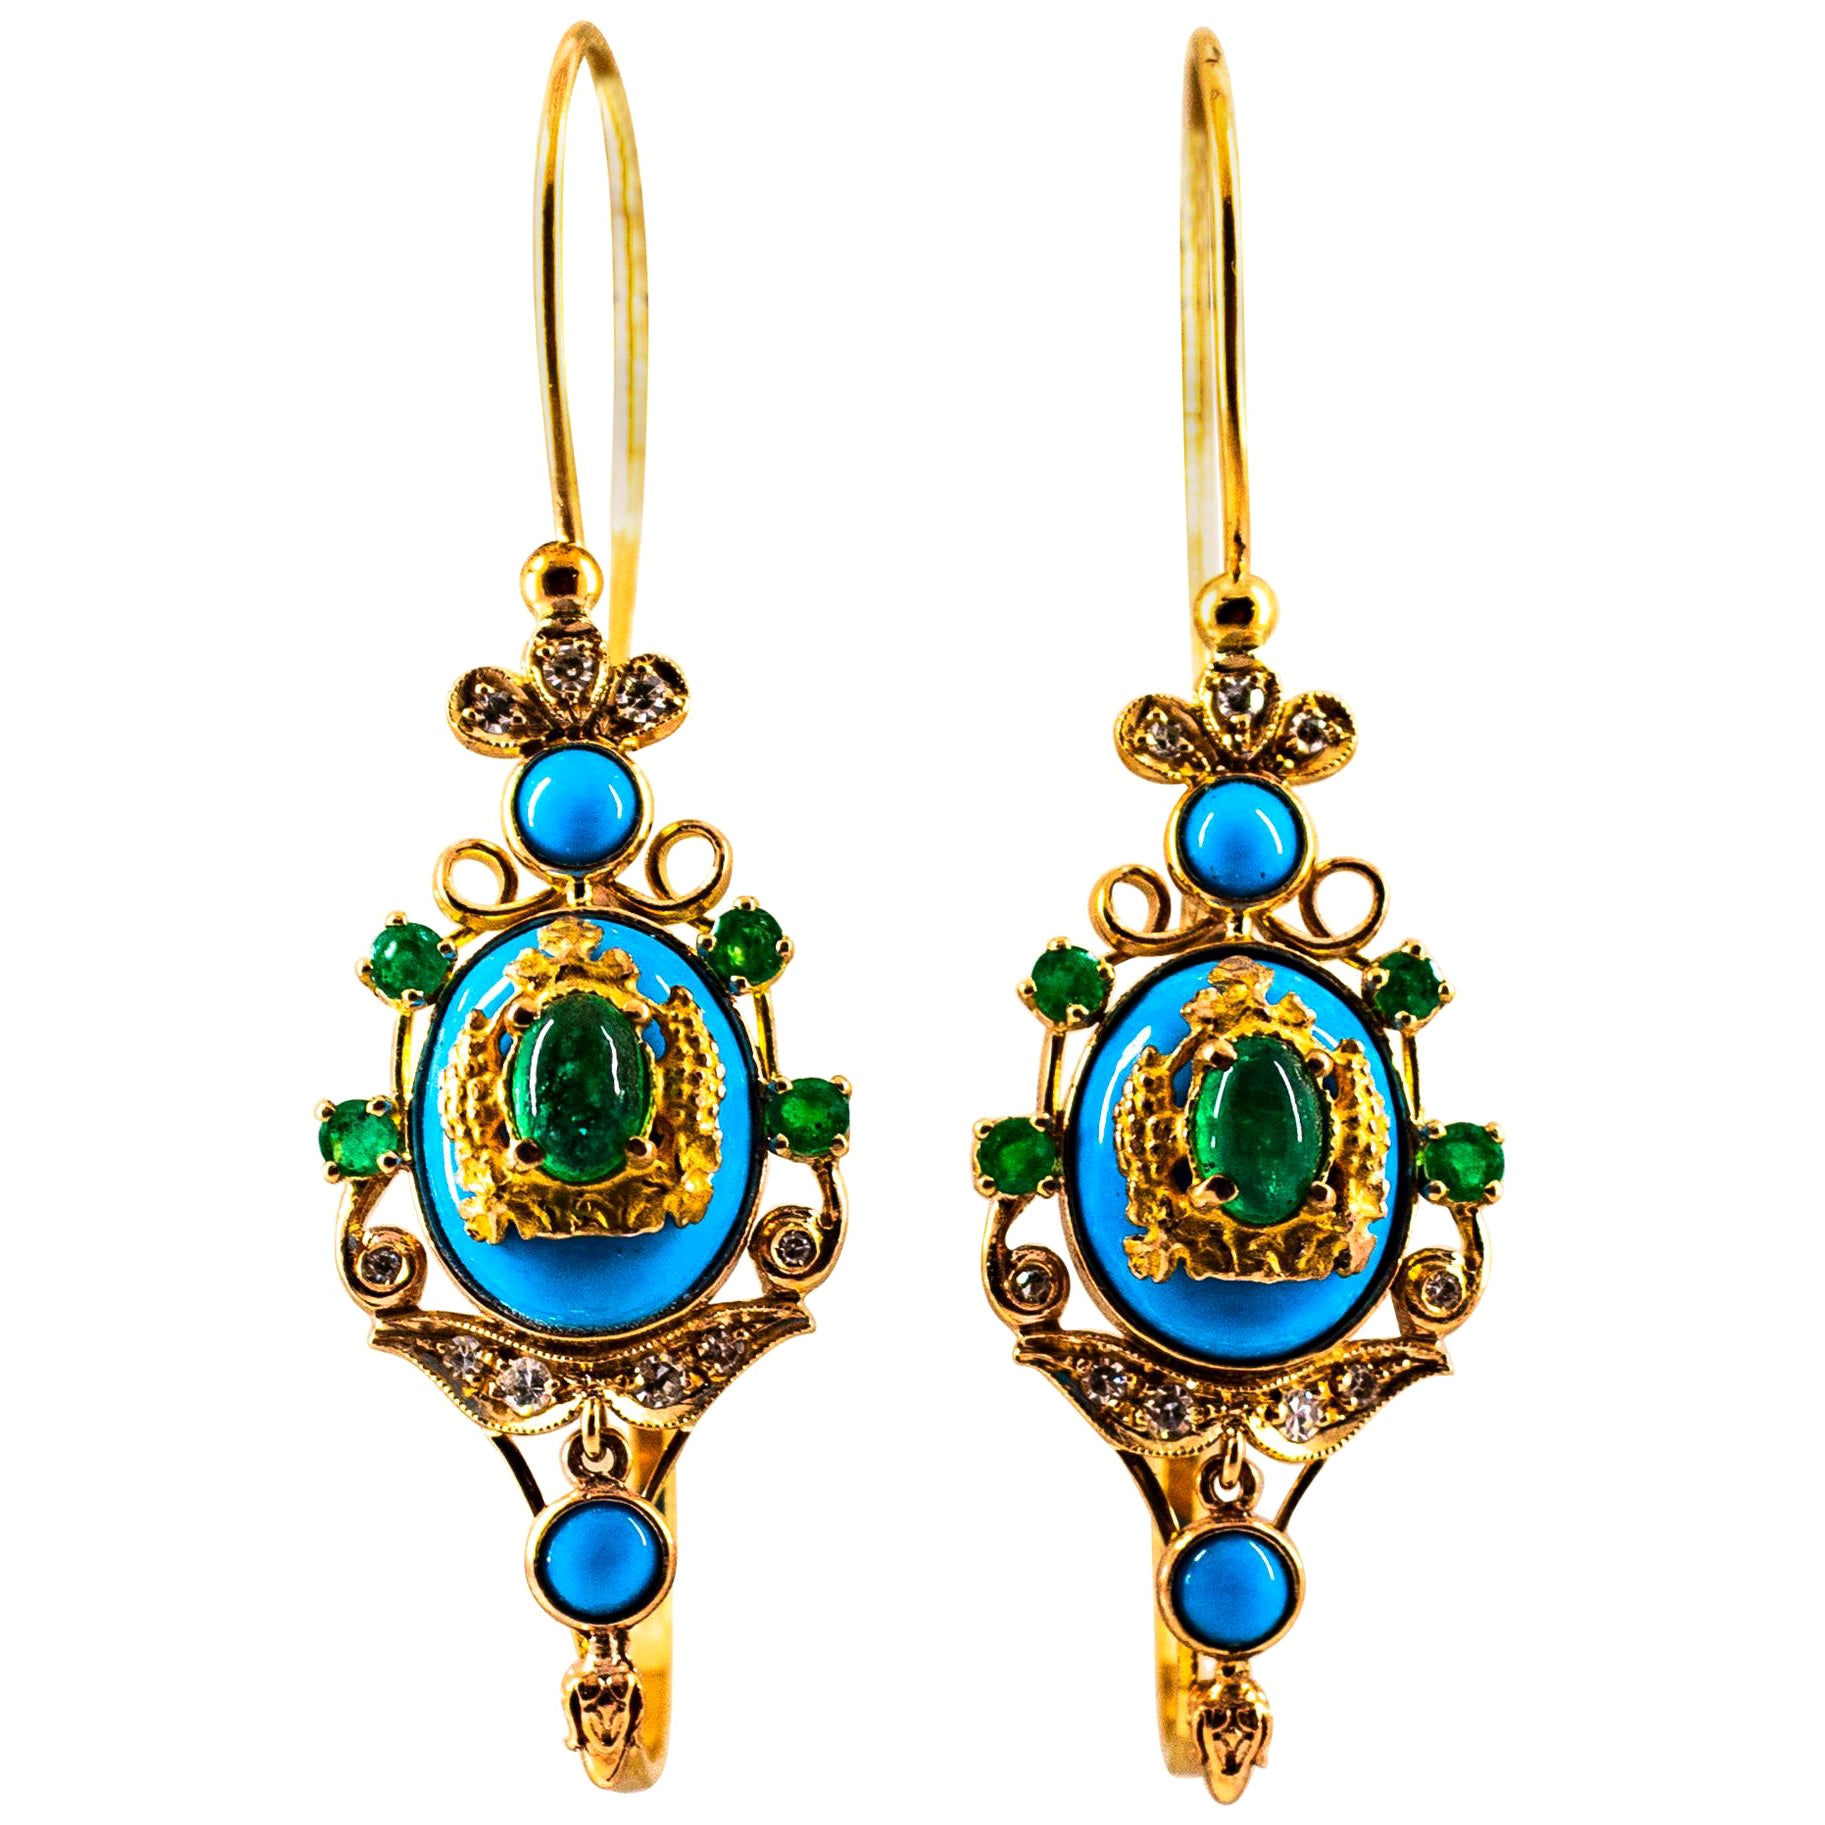 Klappbrisur-Ohrringe im Jugendstil mit weißen Diamanten, Smaragden und Türkisen aus Gelbgold